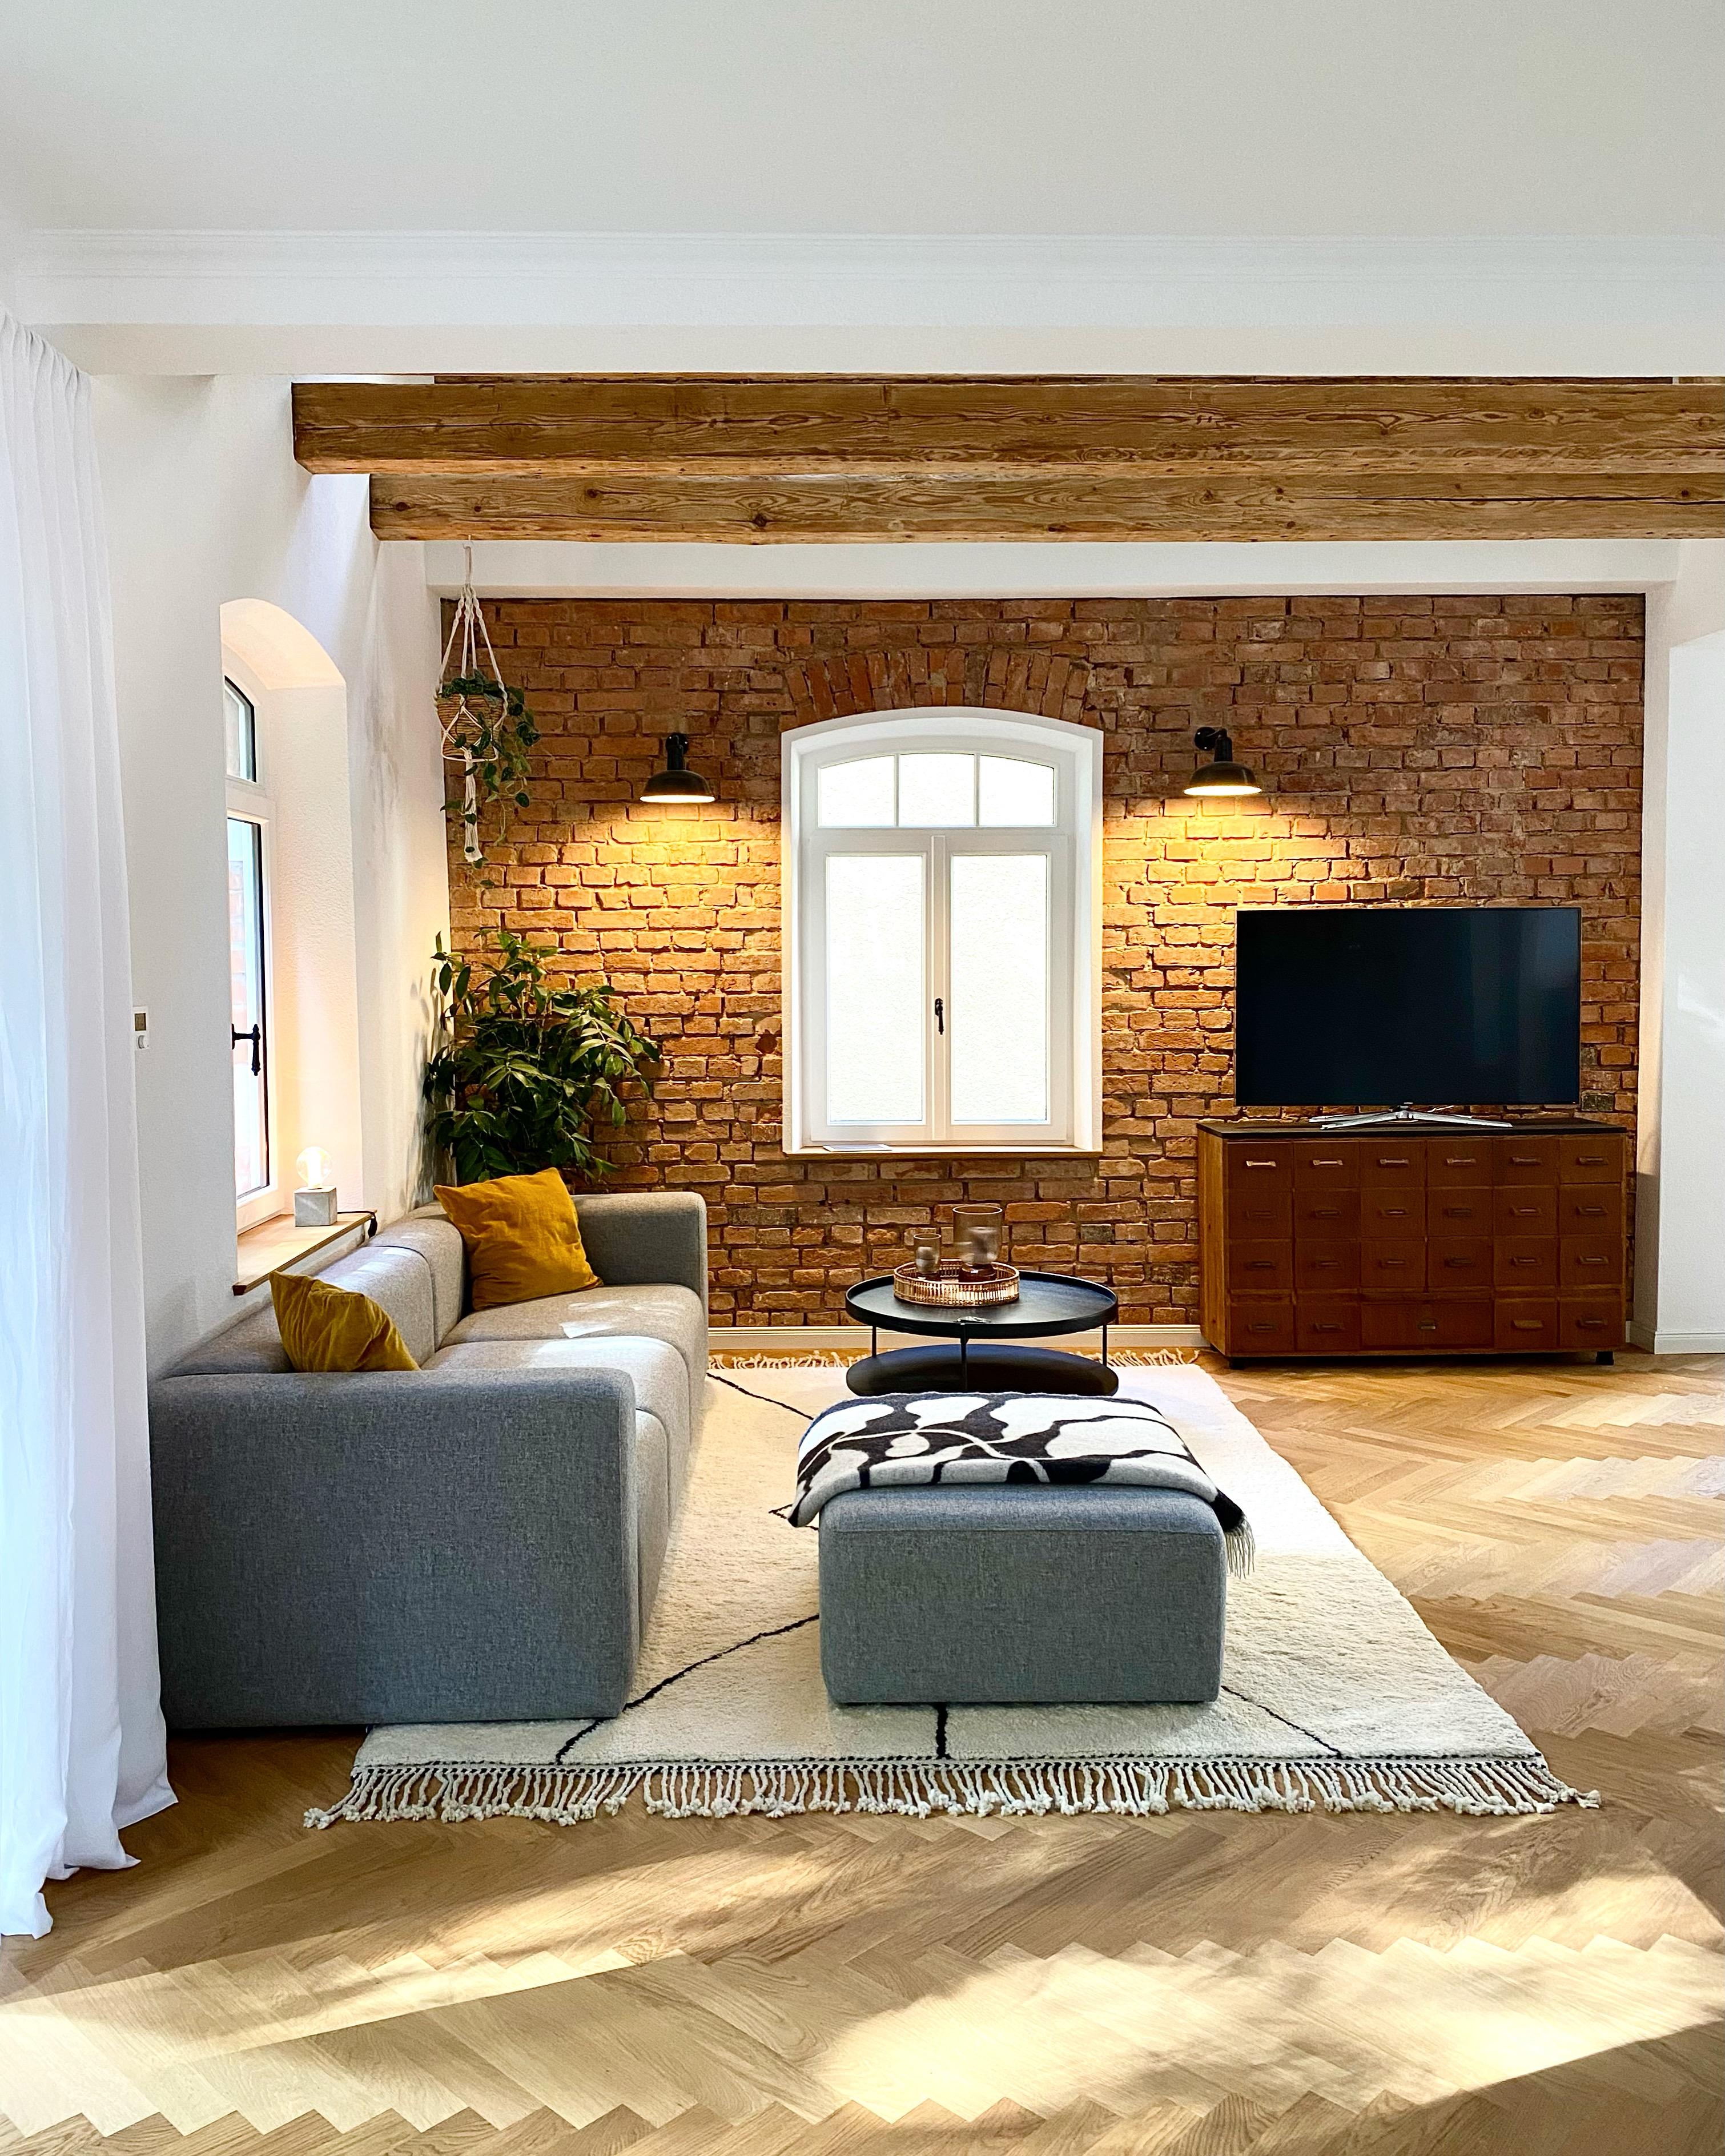 #altbau #interior #wohnzimmer #vintage #midcentury
Folgt mir bitte auf Instagram @derkleinehahn